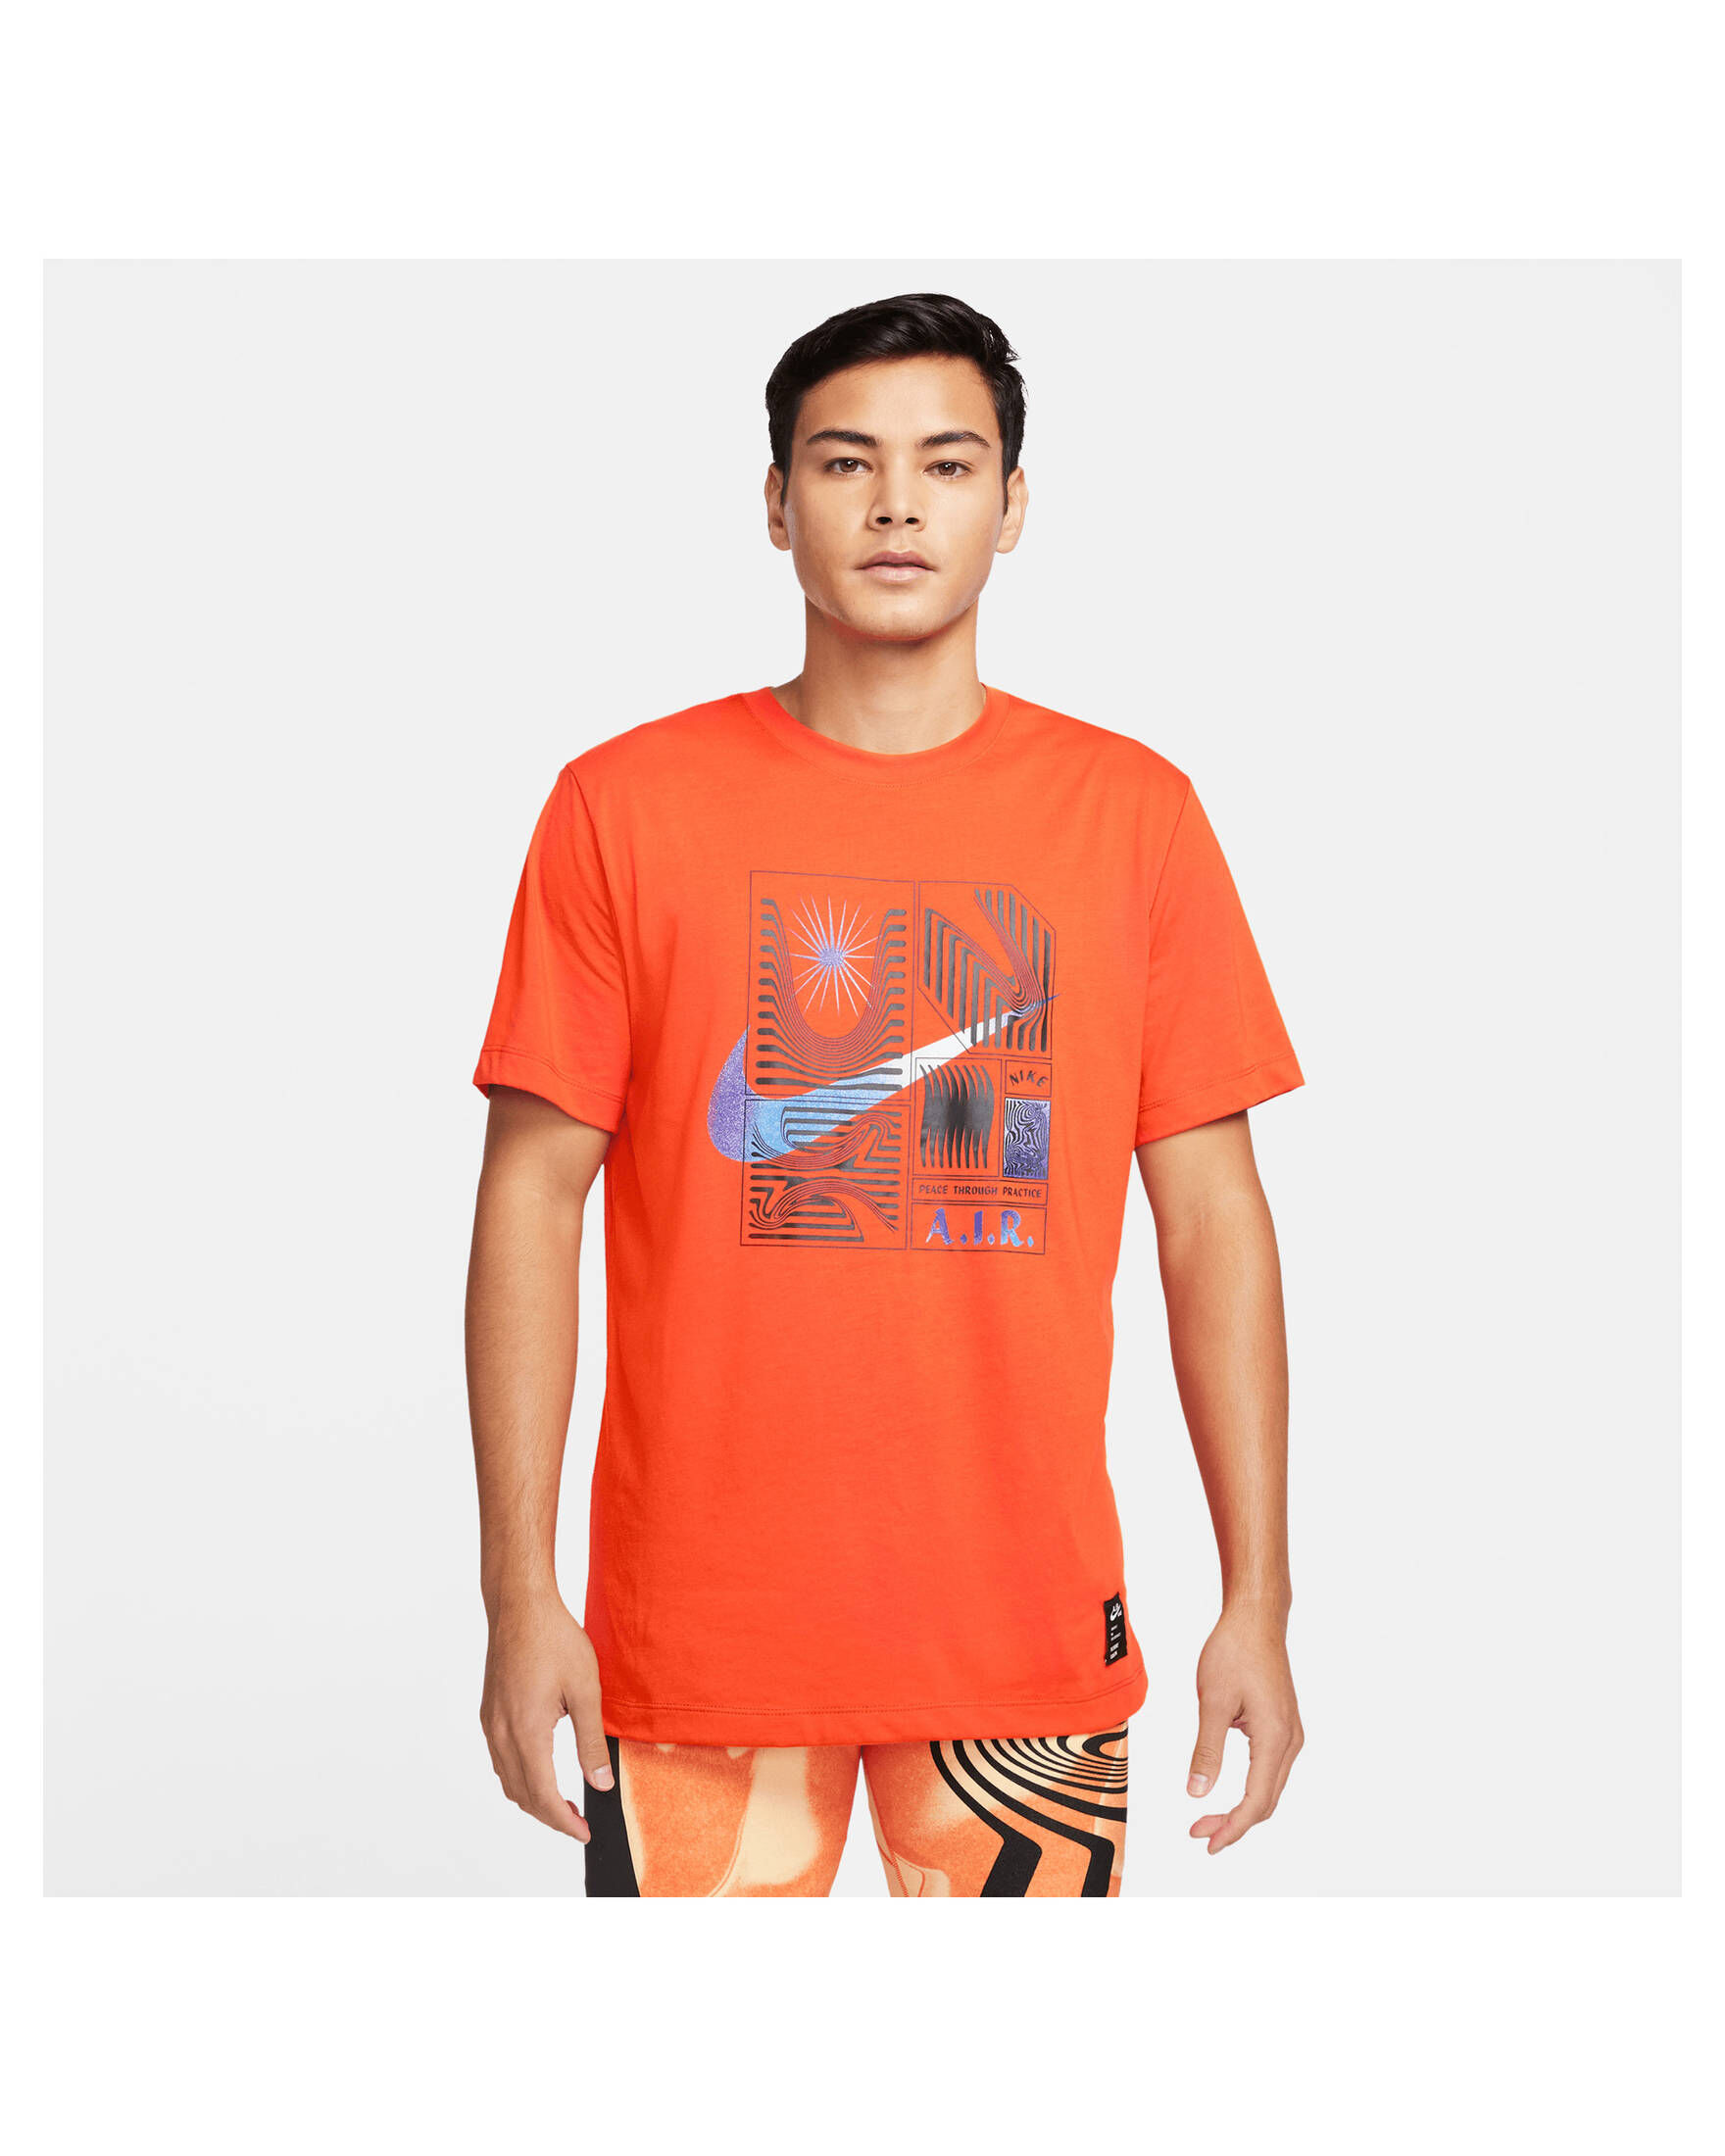 Nike Herren T-Shirt NIKE YOGA | kaufen DRI-FIT A.I.R. engelhorn